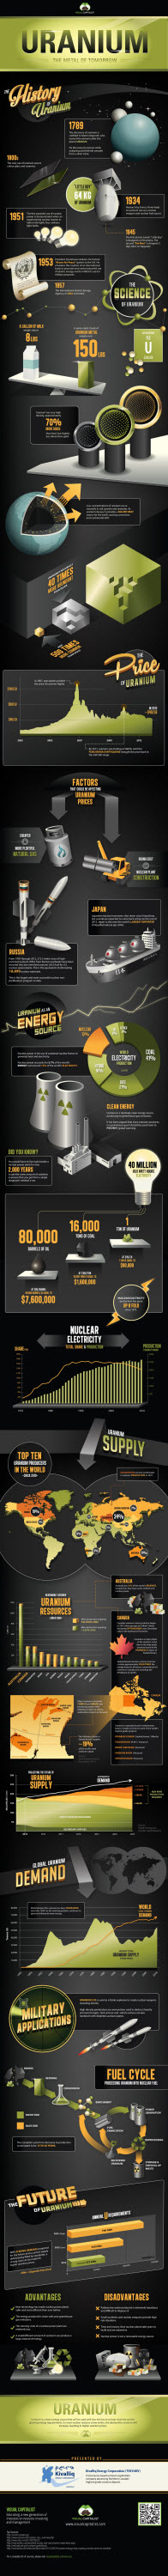 uranium-infographic